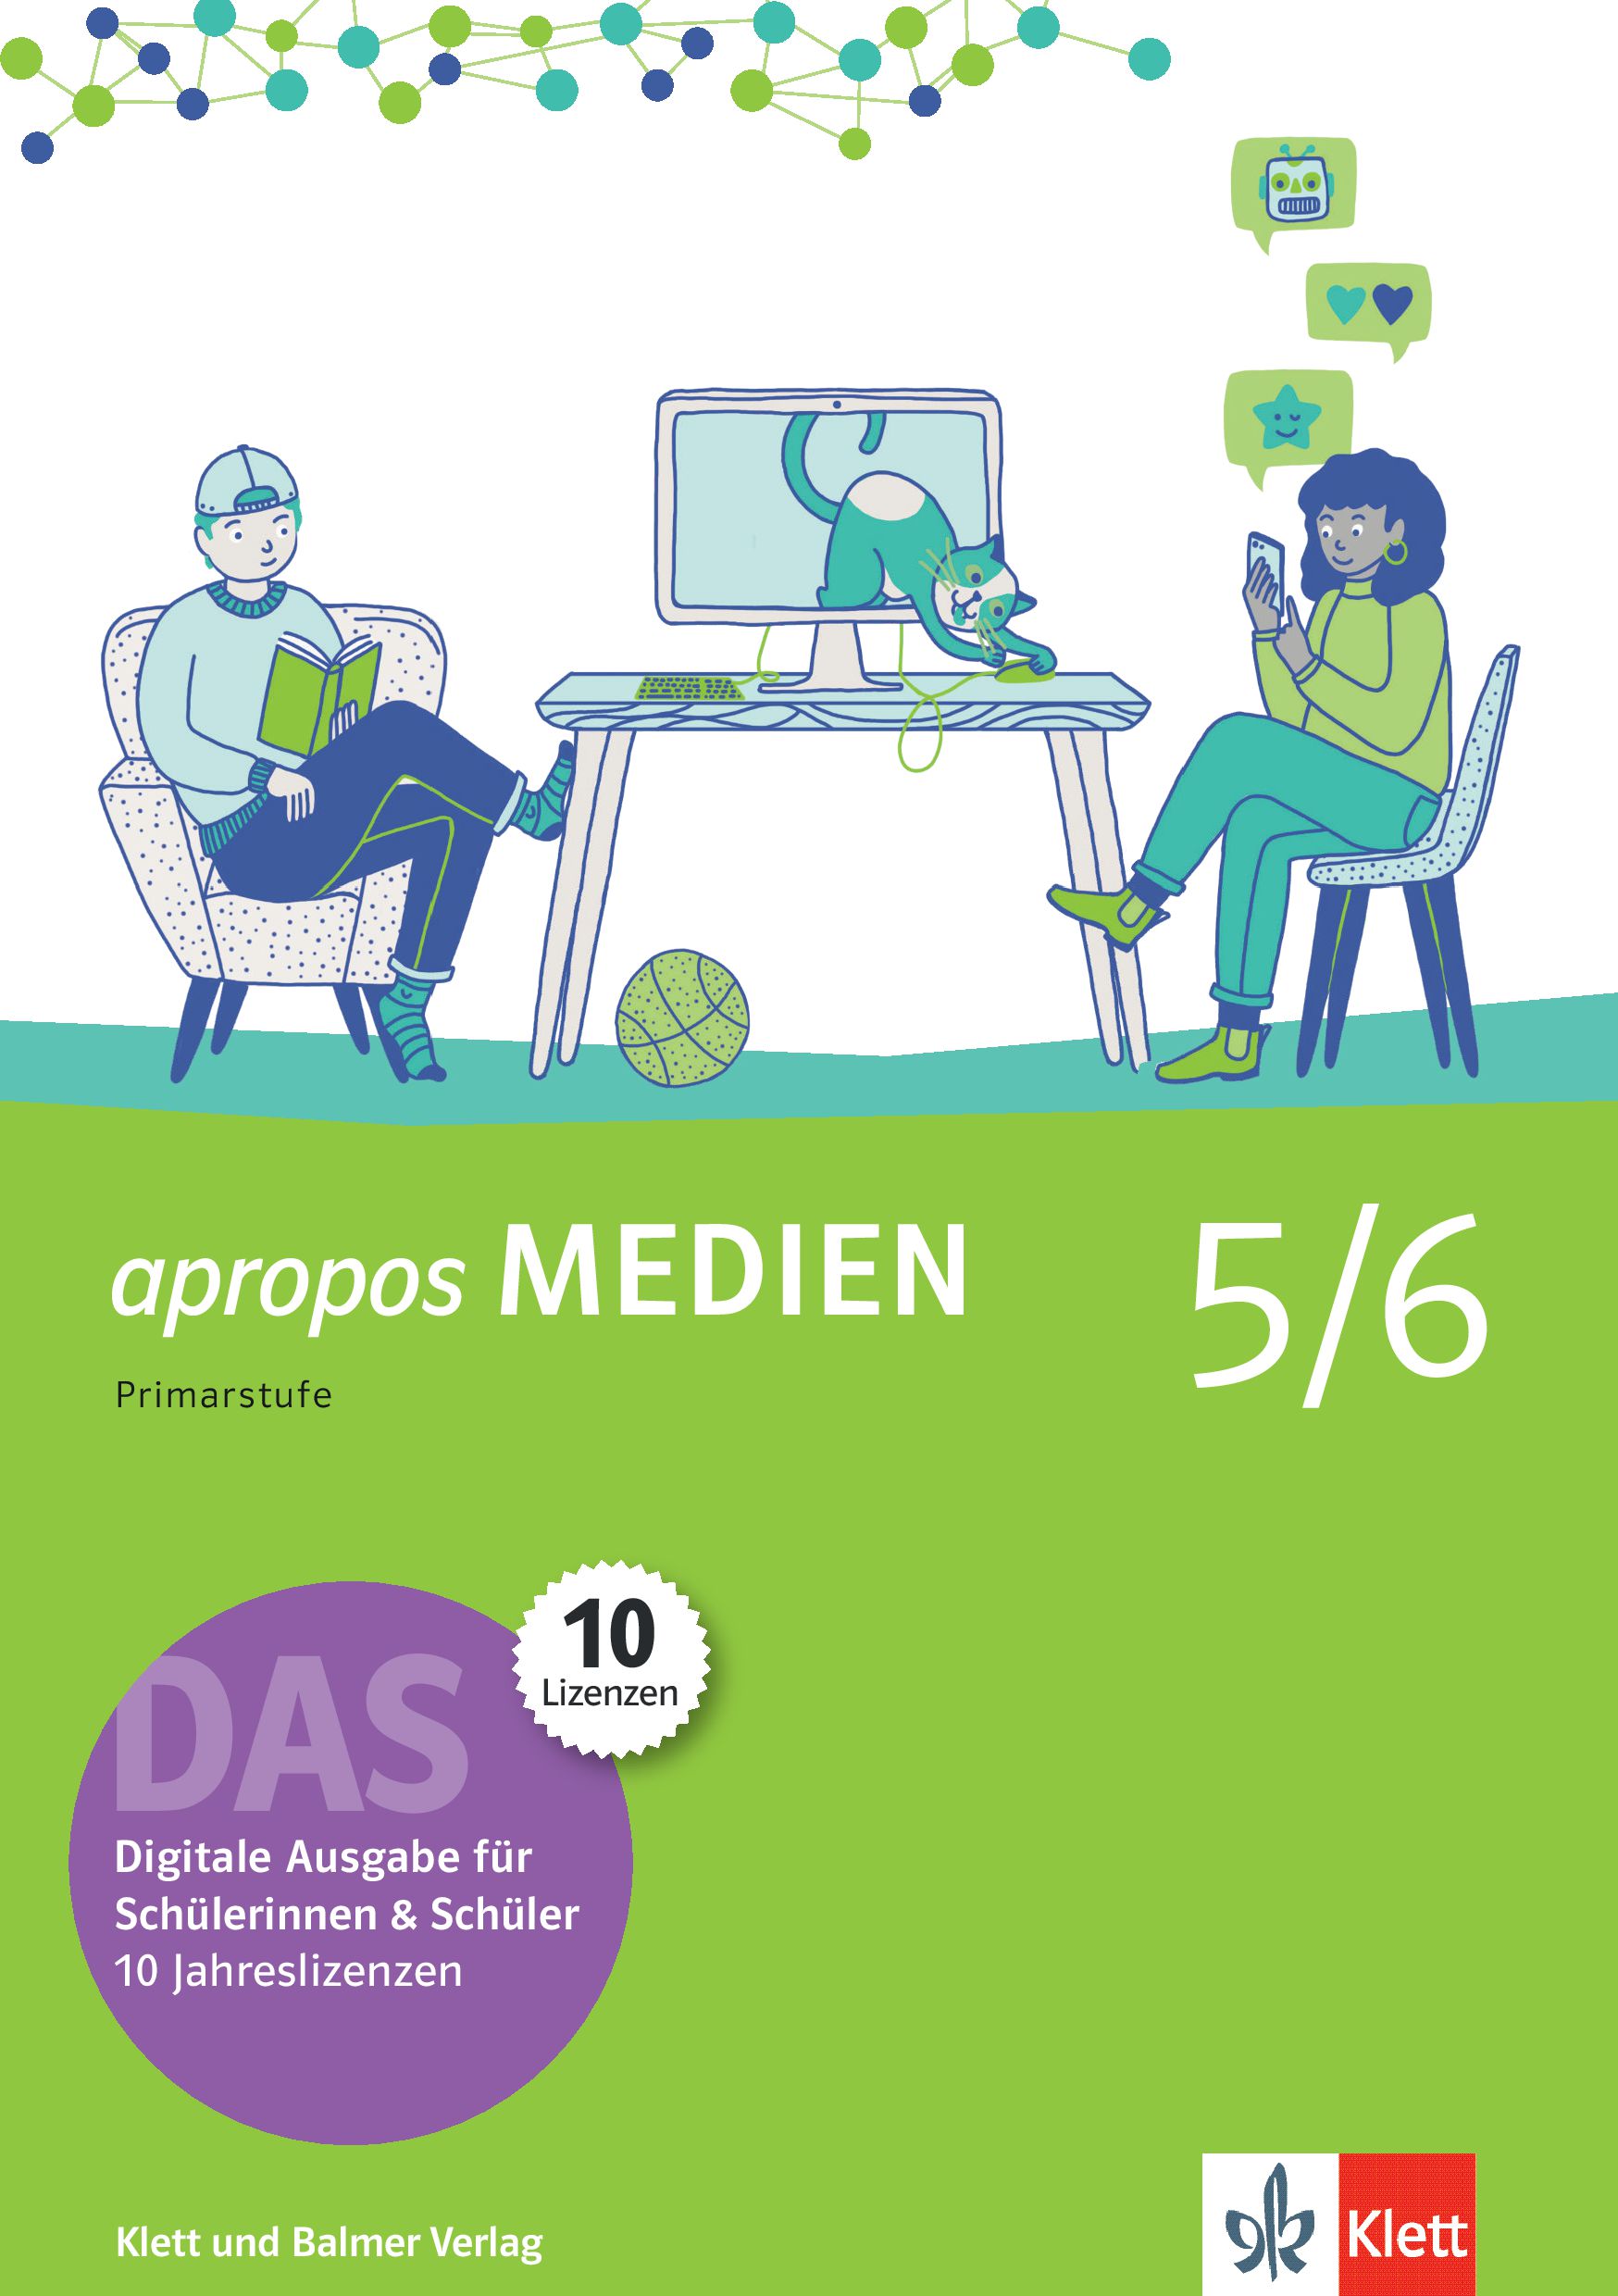 apropos MEDIEN 5/6, DAS - Digitale Aus- gabe für Schülerinnen und Schüler